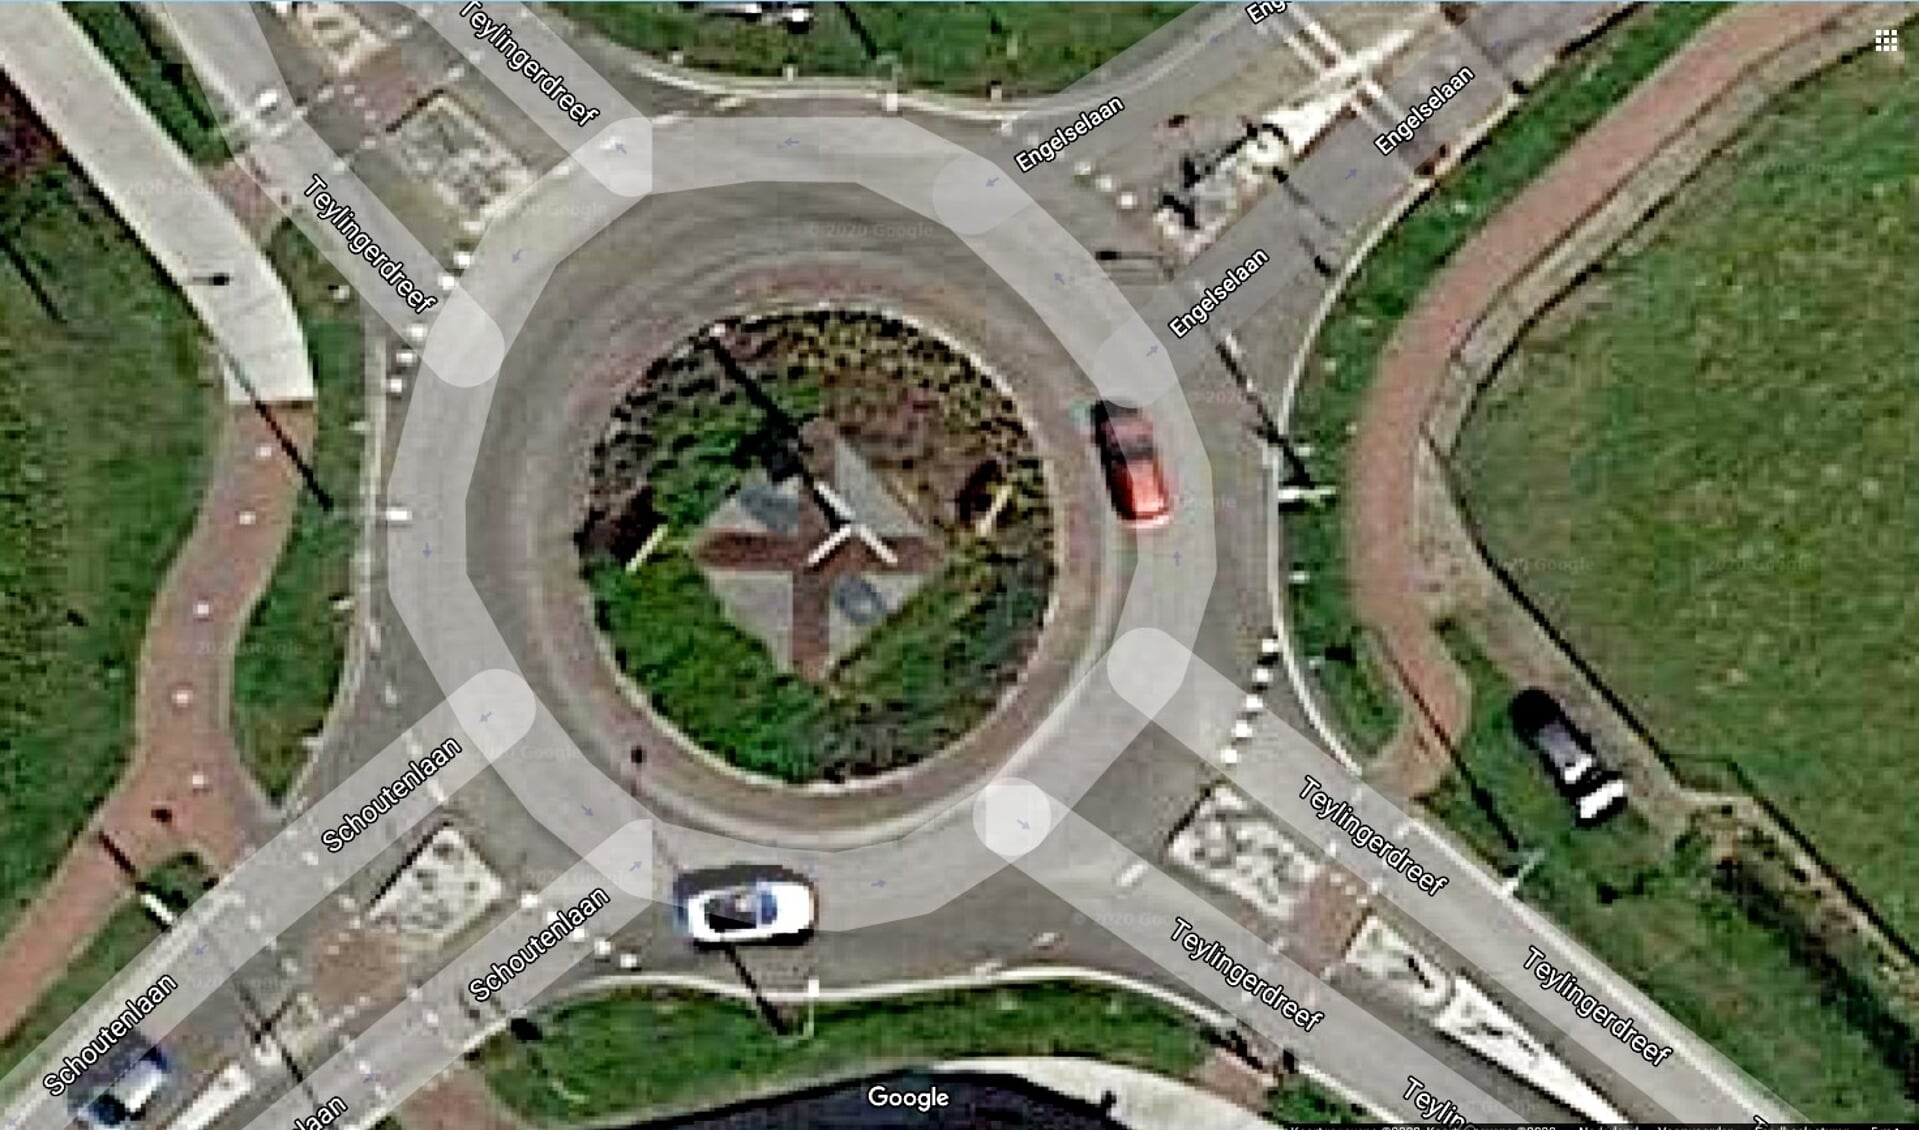 Het gemeentewapen op het verkeersplein. | Foto: pr./Google Maps